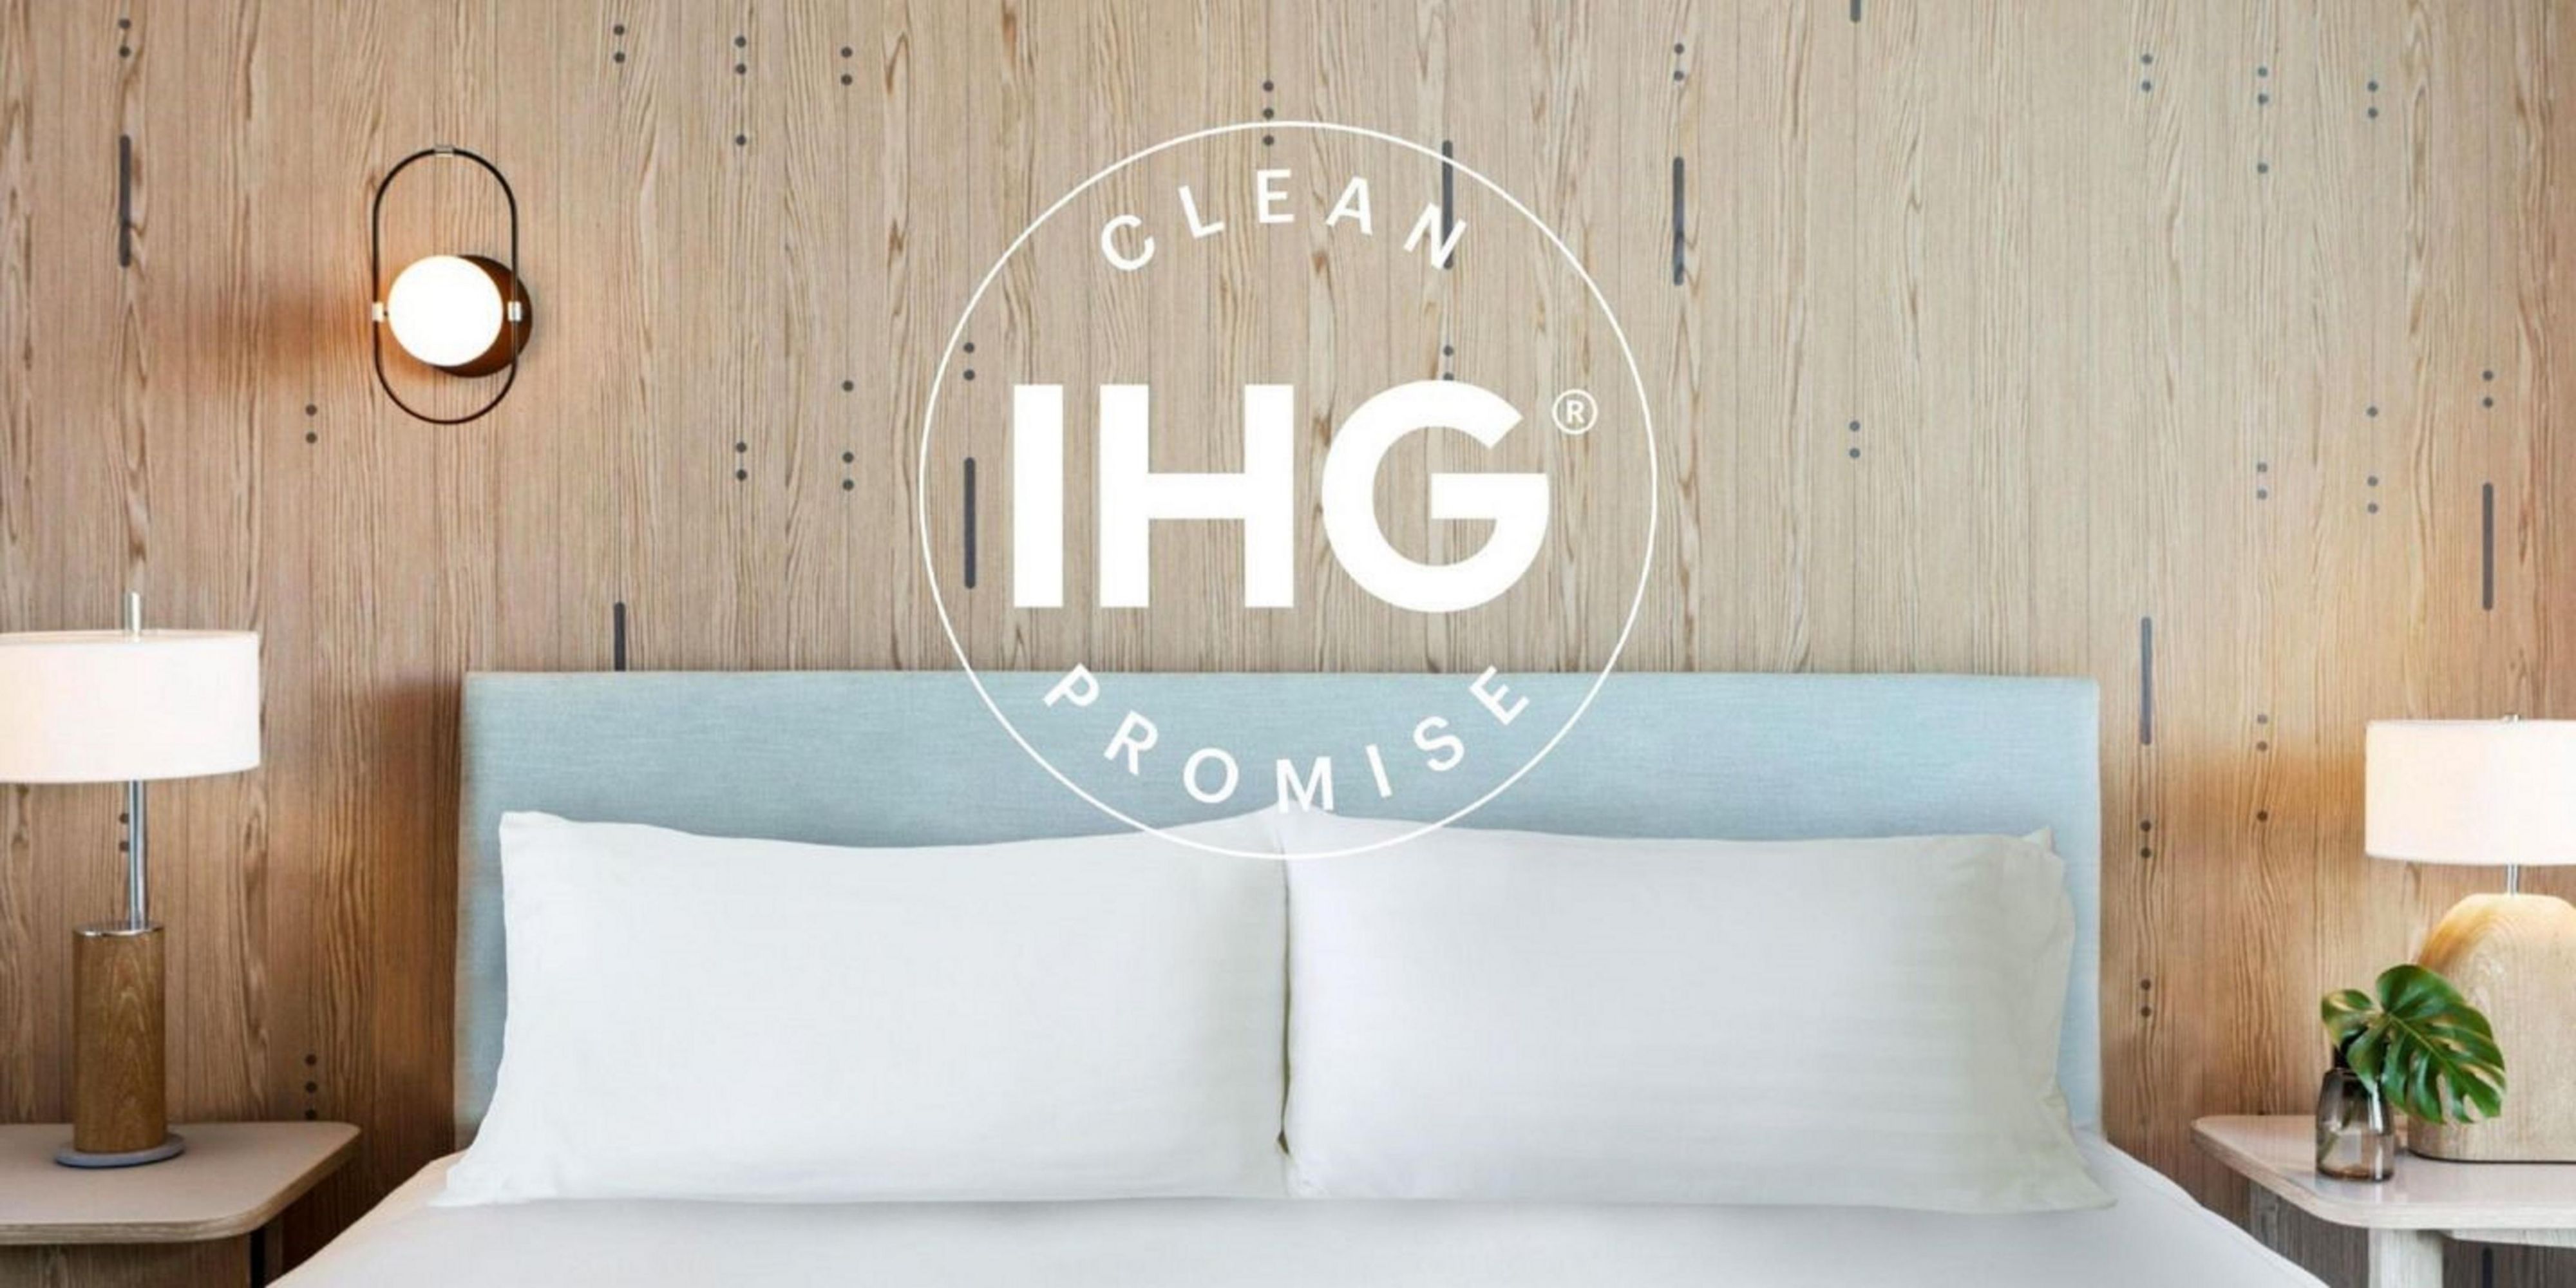 Wir möchten, dass Sie sich in unserem Hotel sicher und geborgen fühlen. So haben wir den höchstmöglichen Standard für unseren Reinigungsprozess.